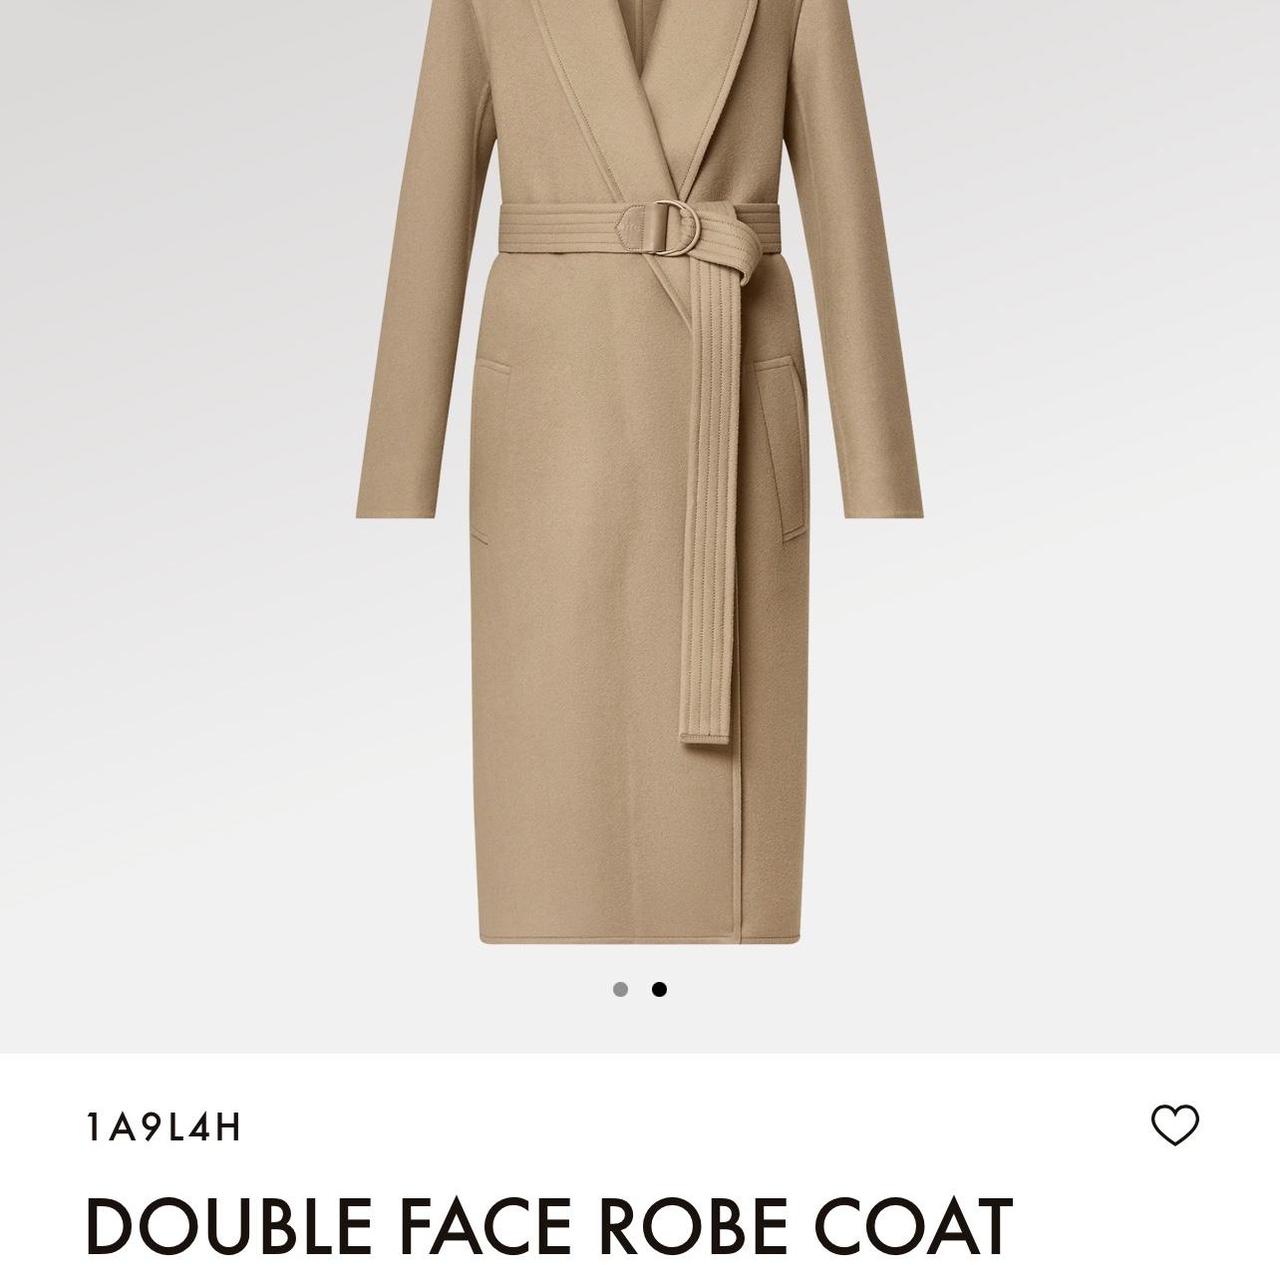 Louis Vuitton Double Face Robe Coat 1A9L4H